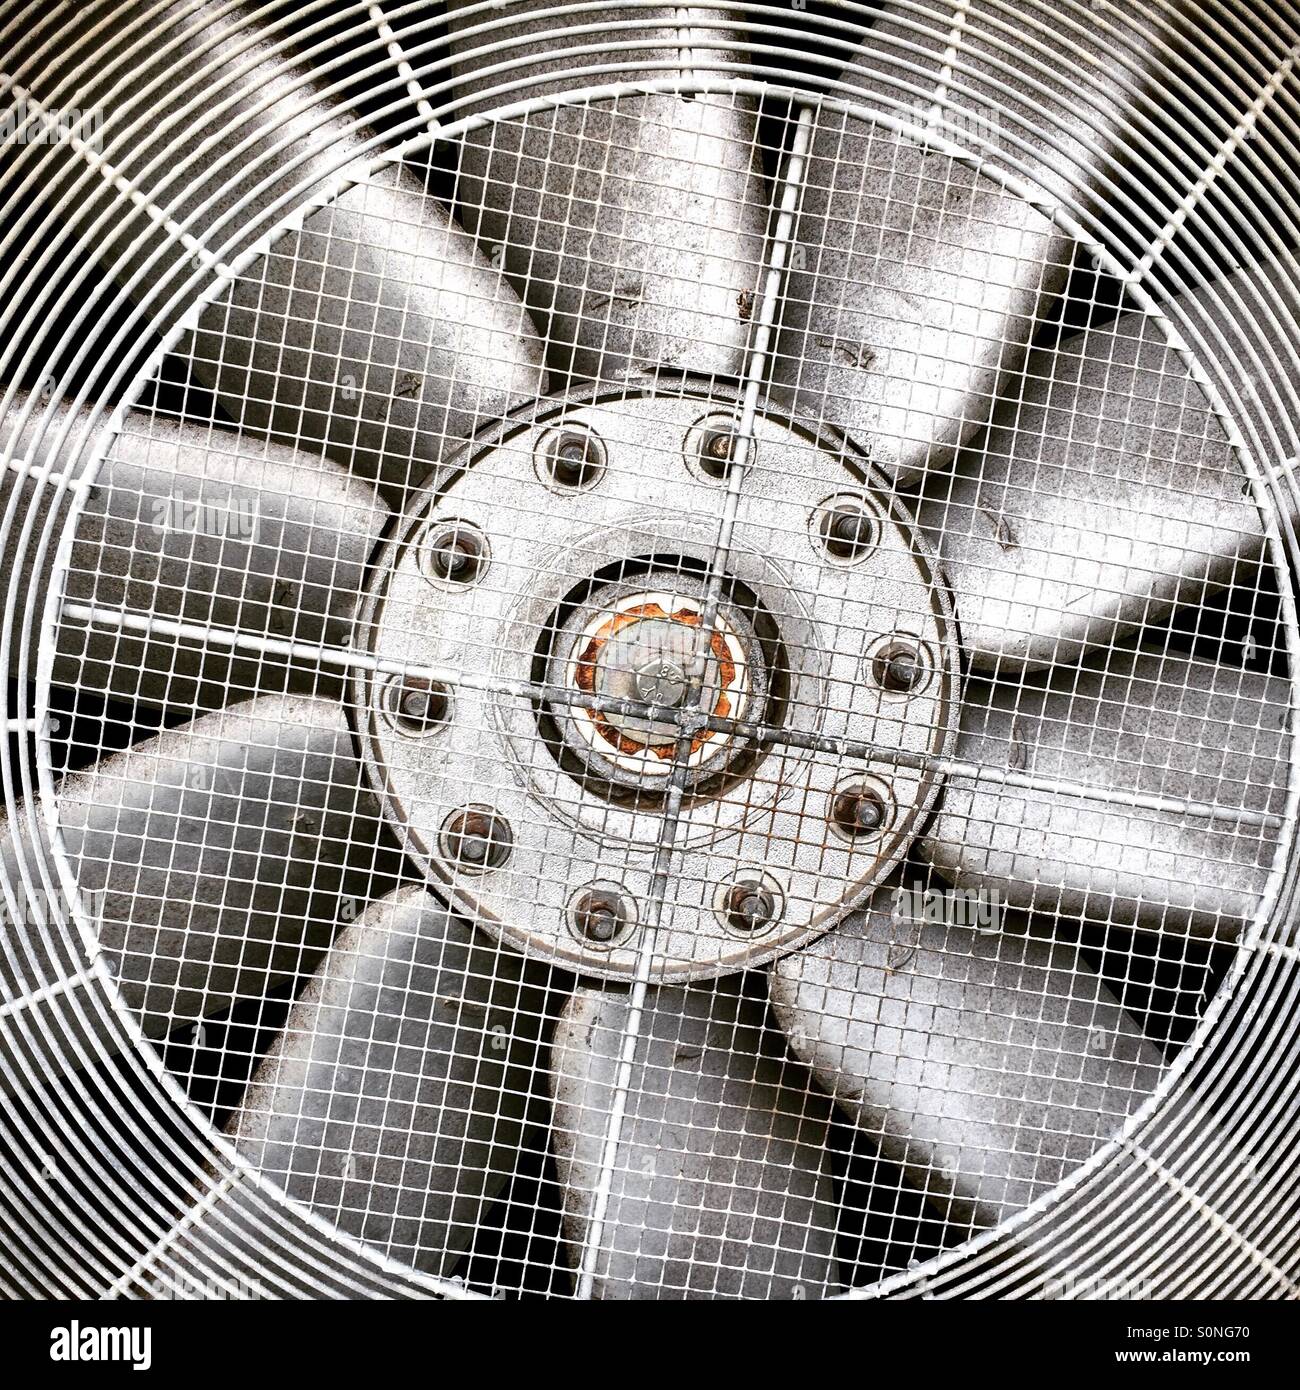 Ventilateur sèche-linge industriel Photo Stock - Alamy